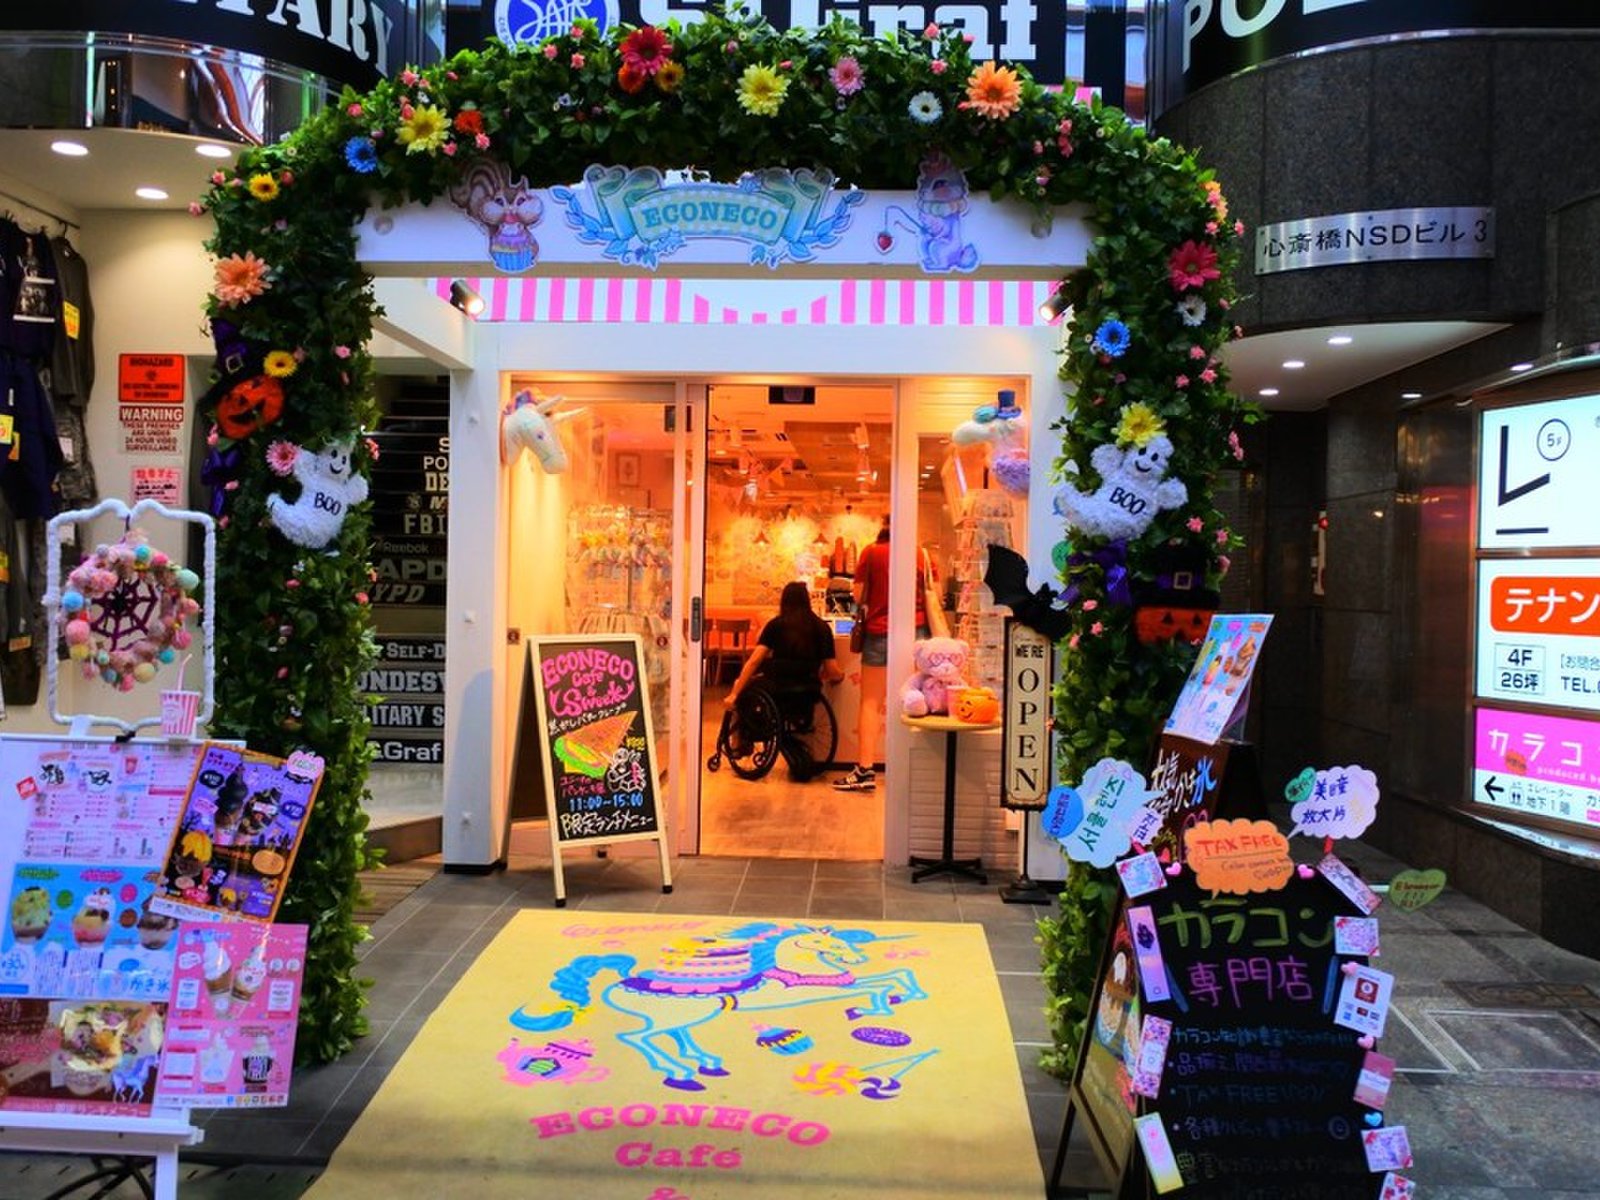 インスタ 話題 可愛いが止まらない エリア別大阪で話題のピンクカフェ3店 Playlife プレイライフ